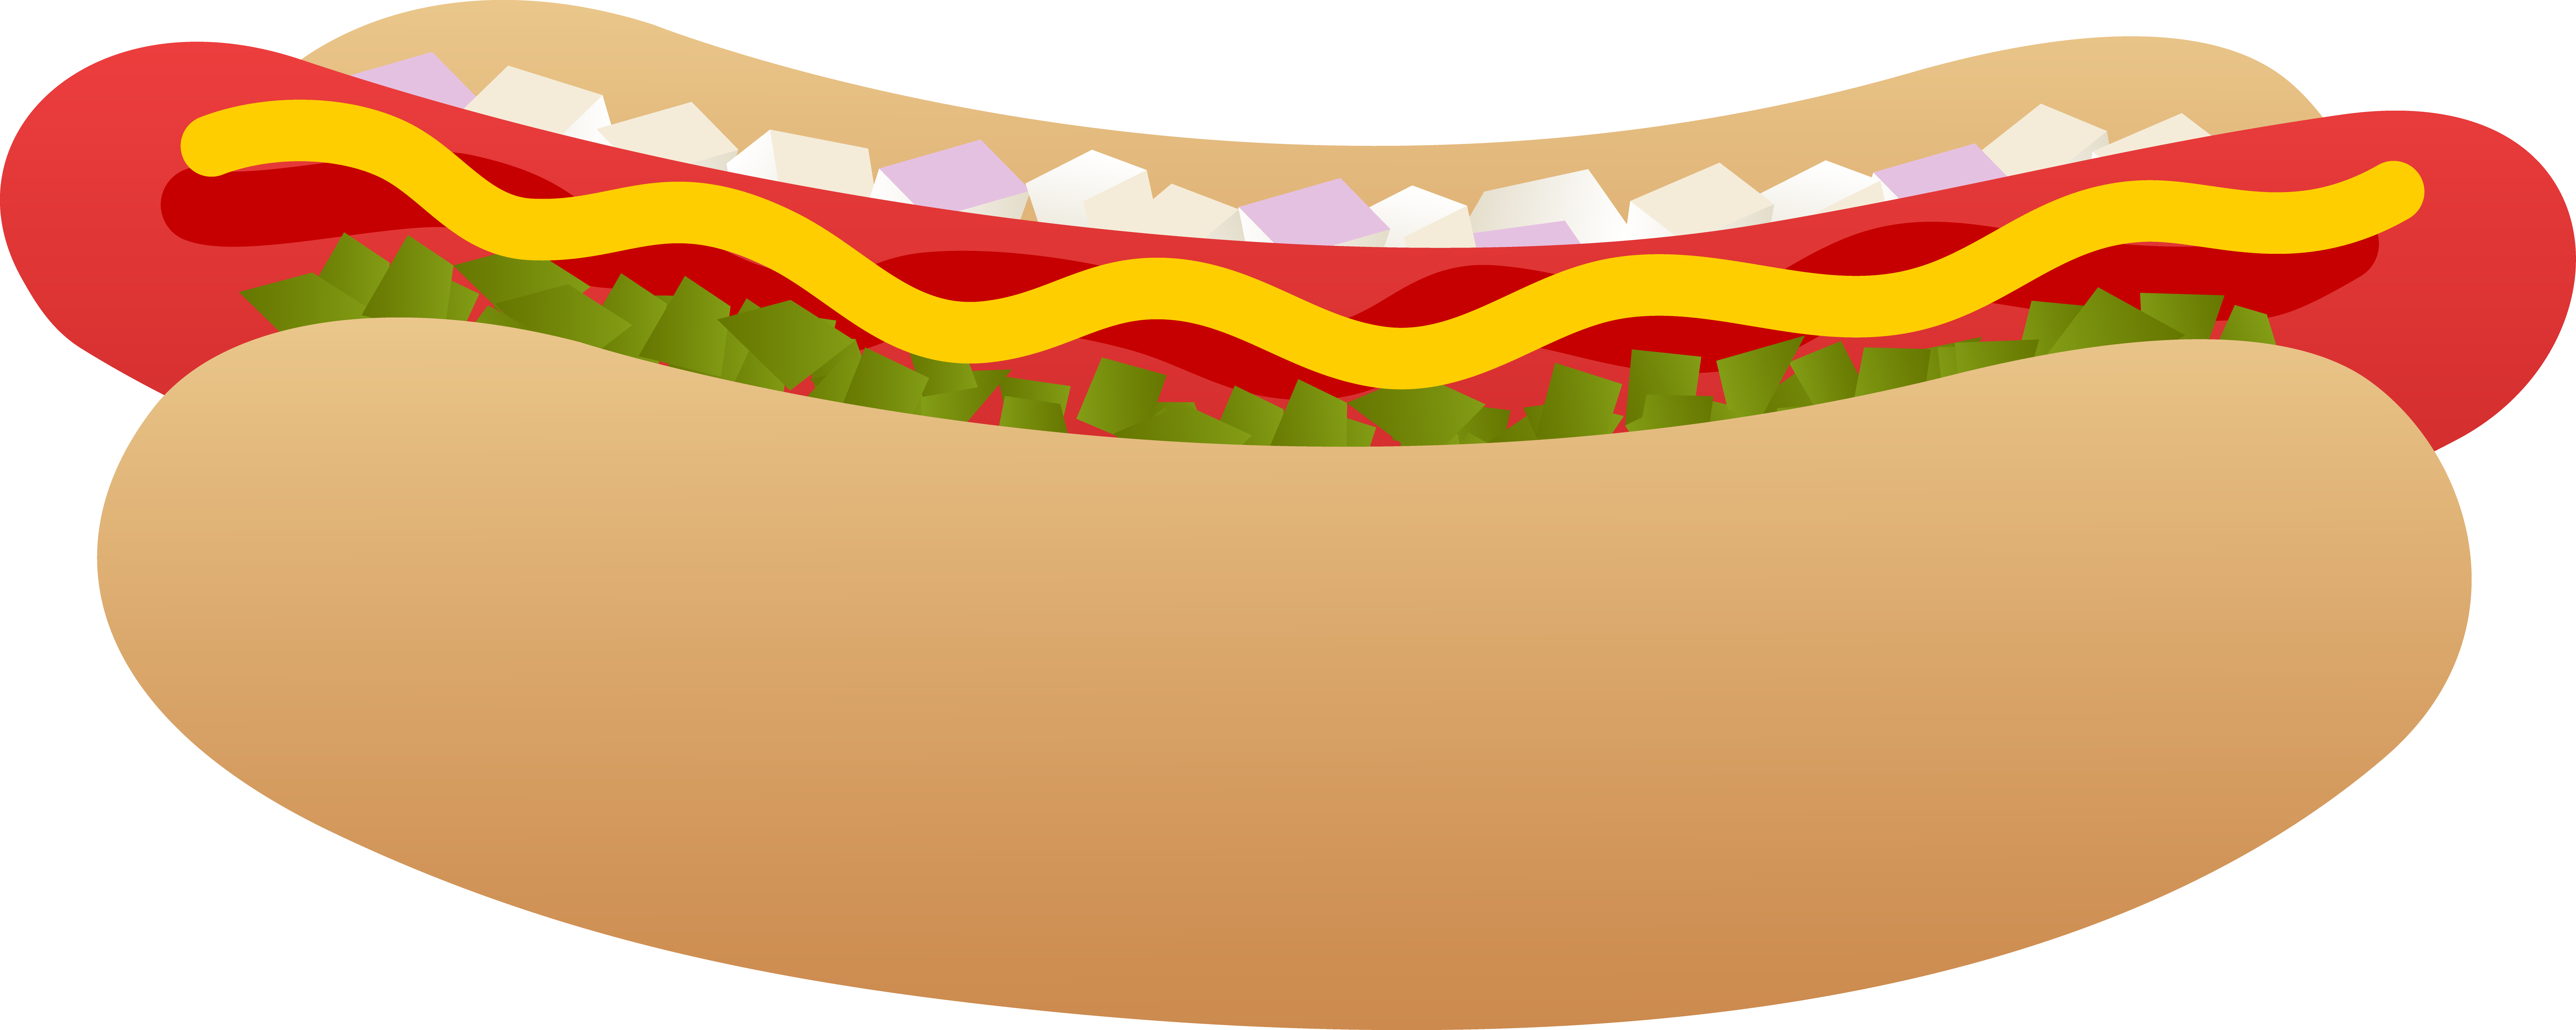 hotdog_on_bun_825.jpg